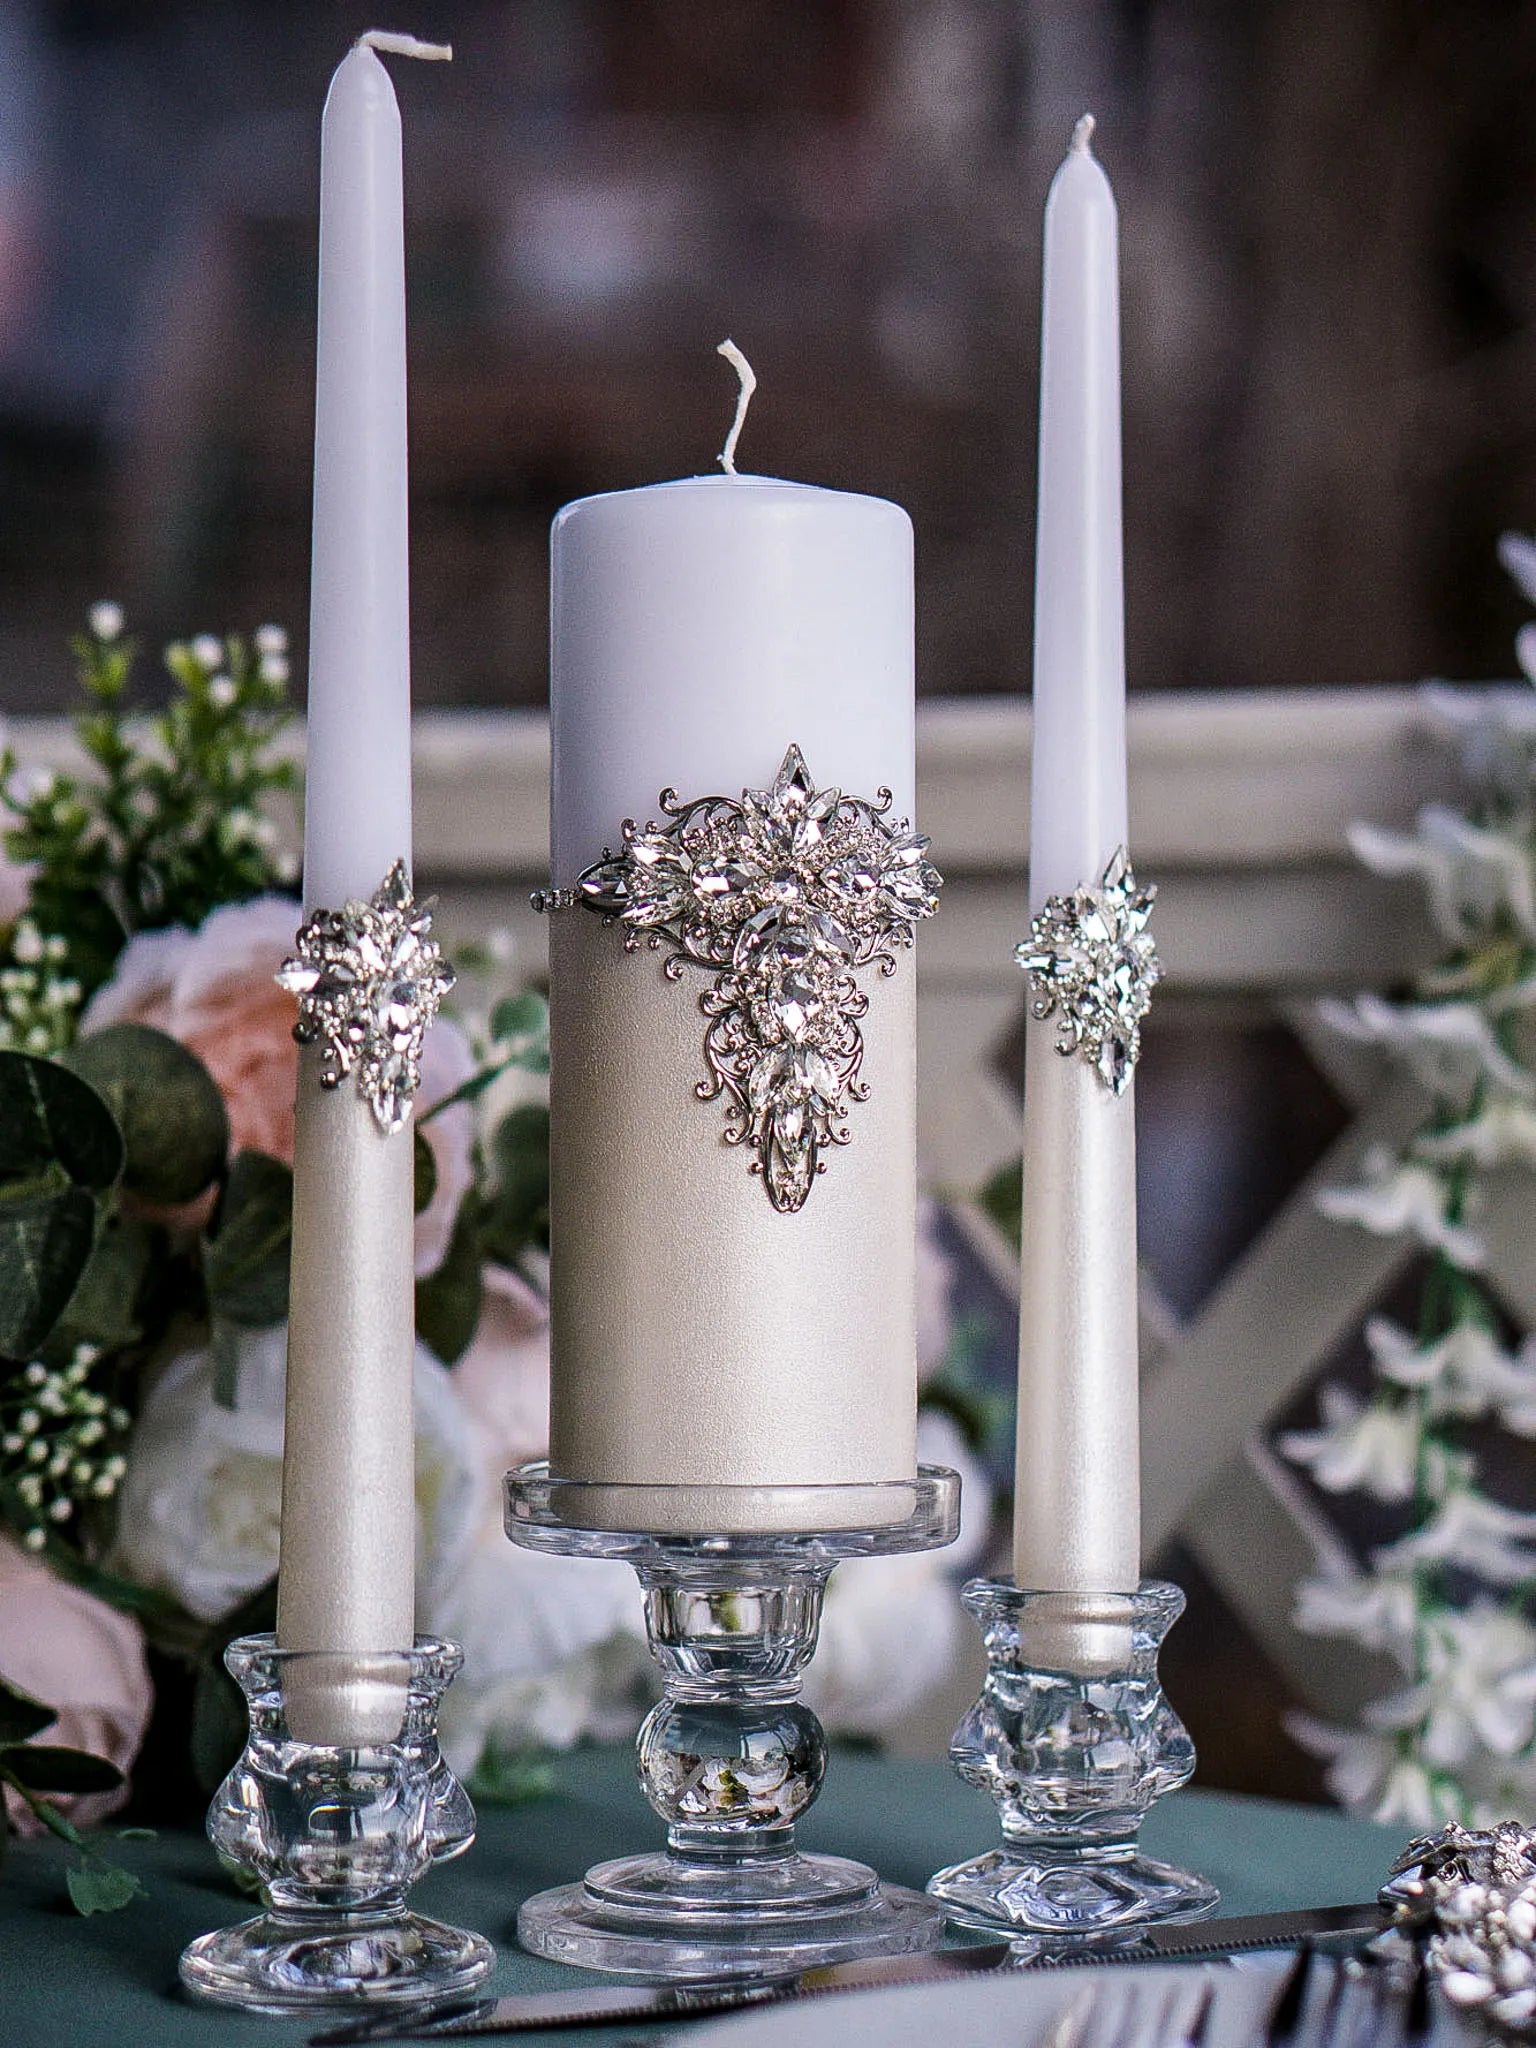 Elegant Gothic Black Crystals Unity Candles - Modern Wedding